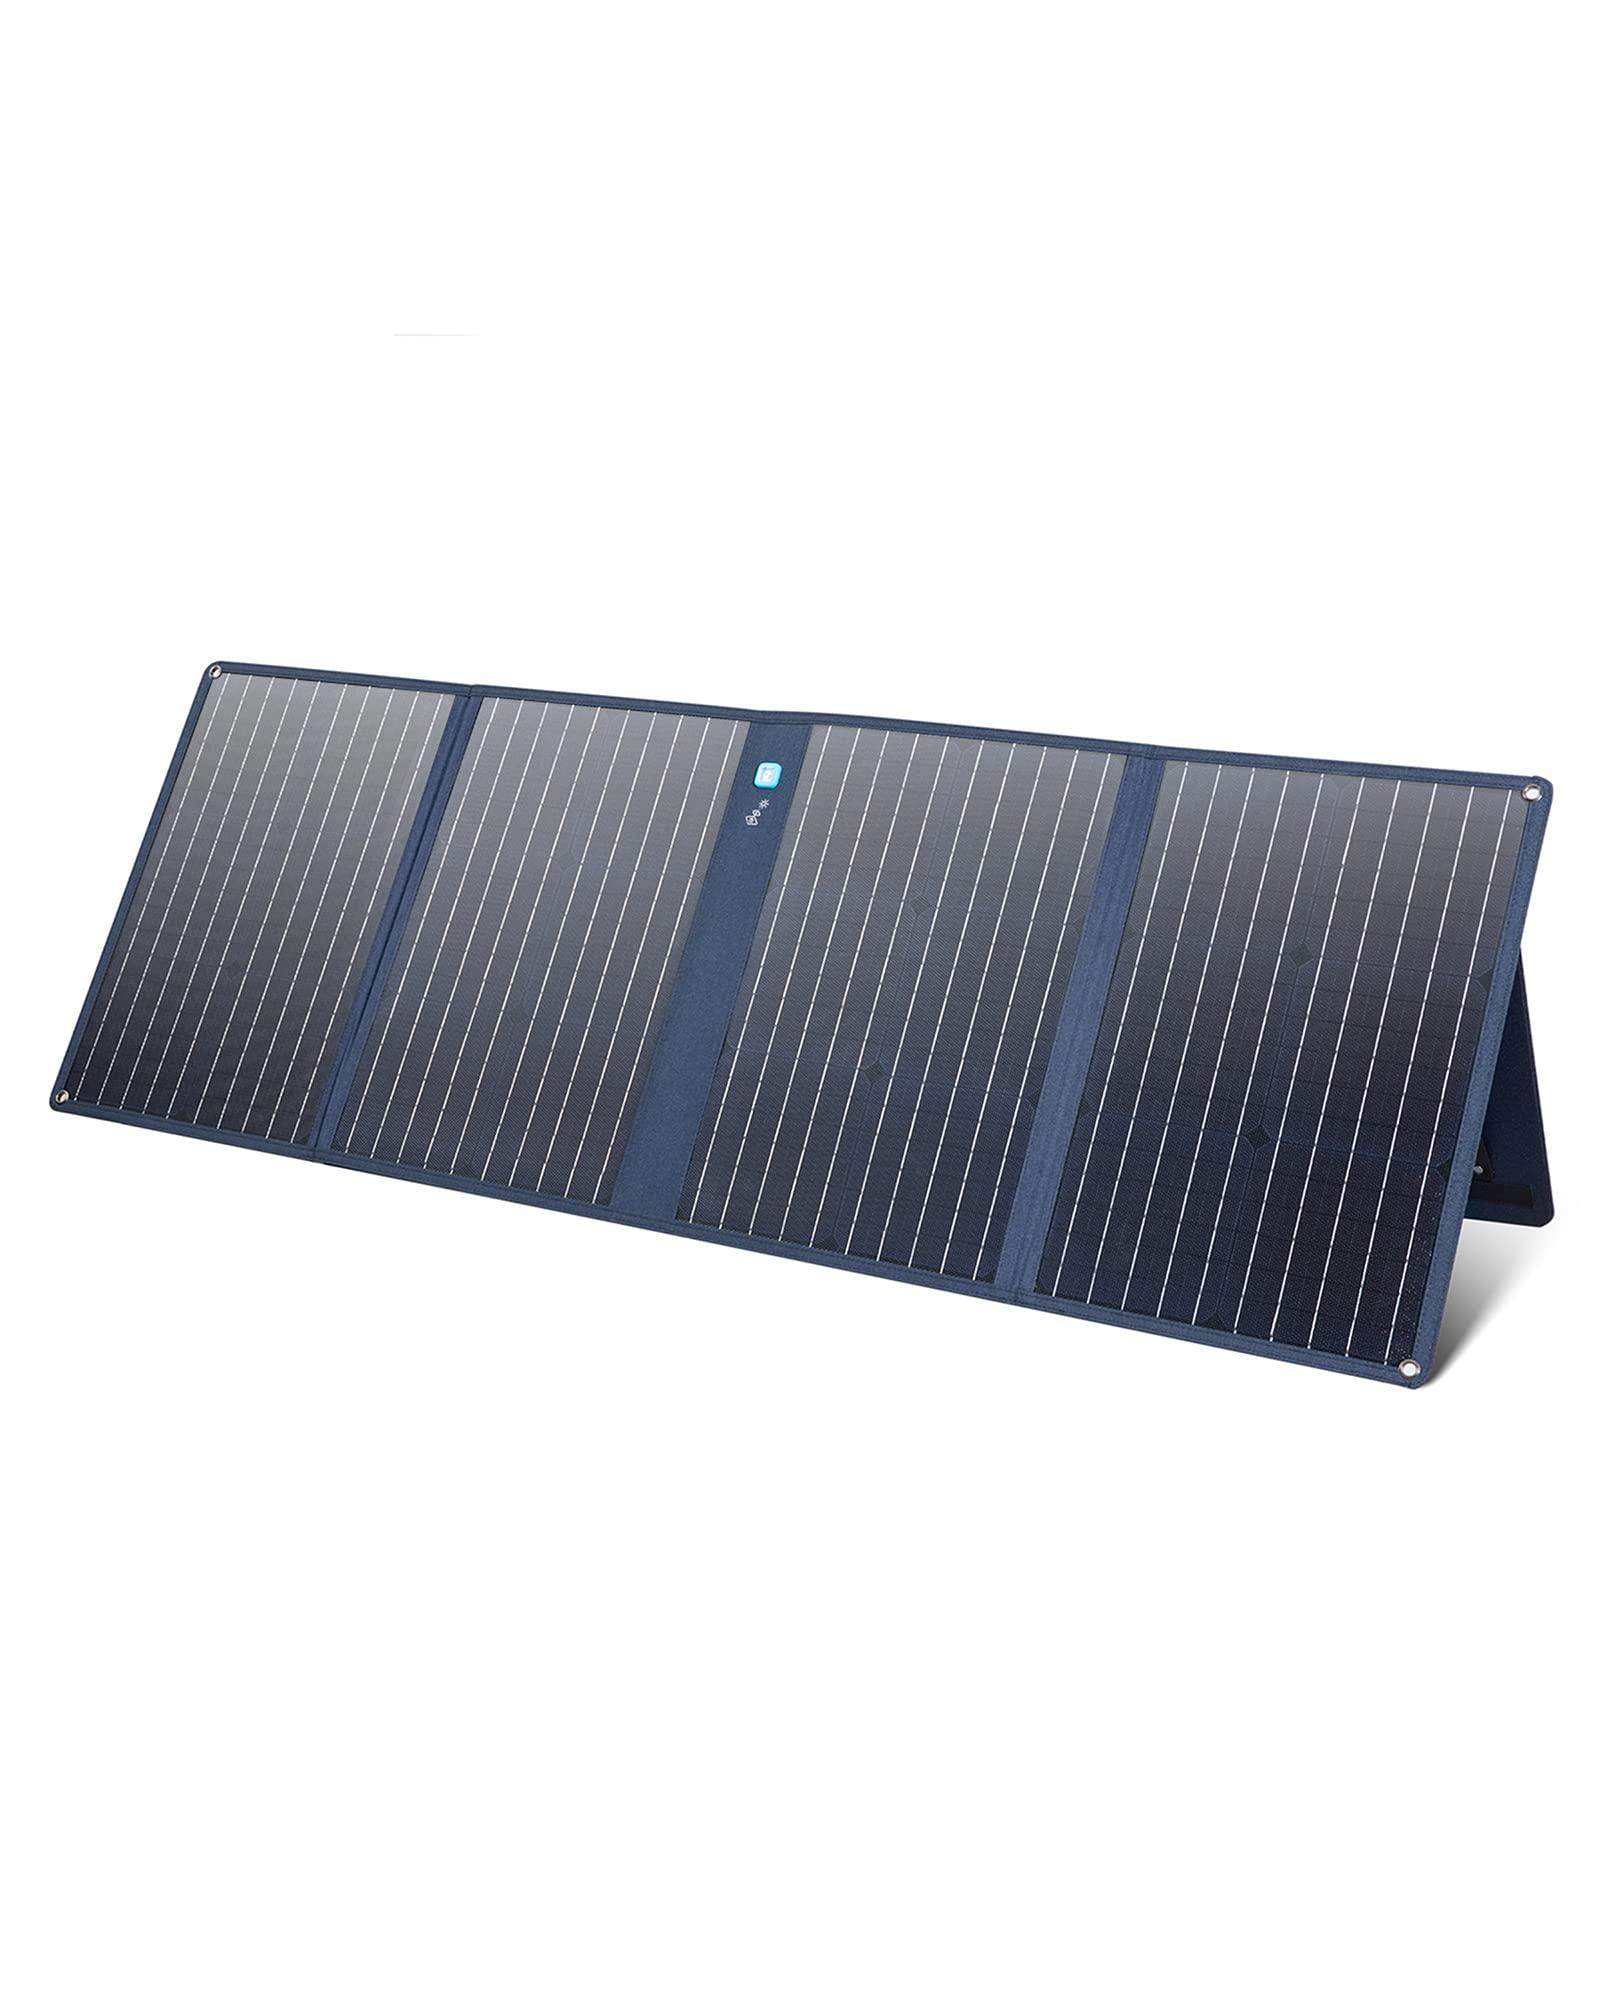 لوح طاقة شمسية 100 واط أنكر Anker 625 Solar Panel With Adjustable KickStand - cG9zdDo5Nzc0Mjk=